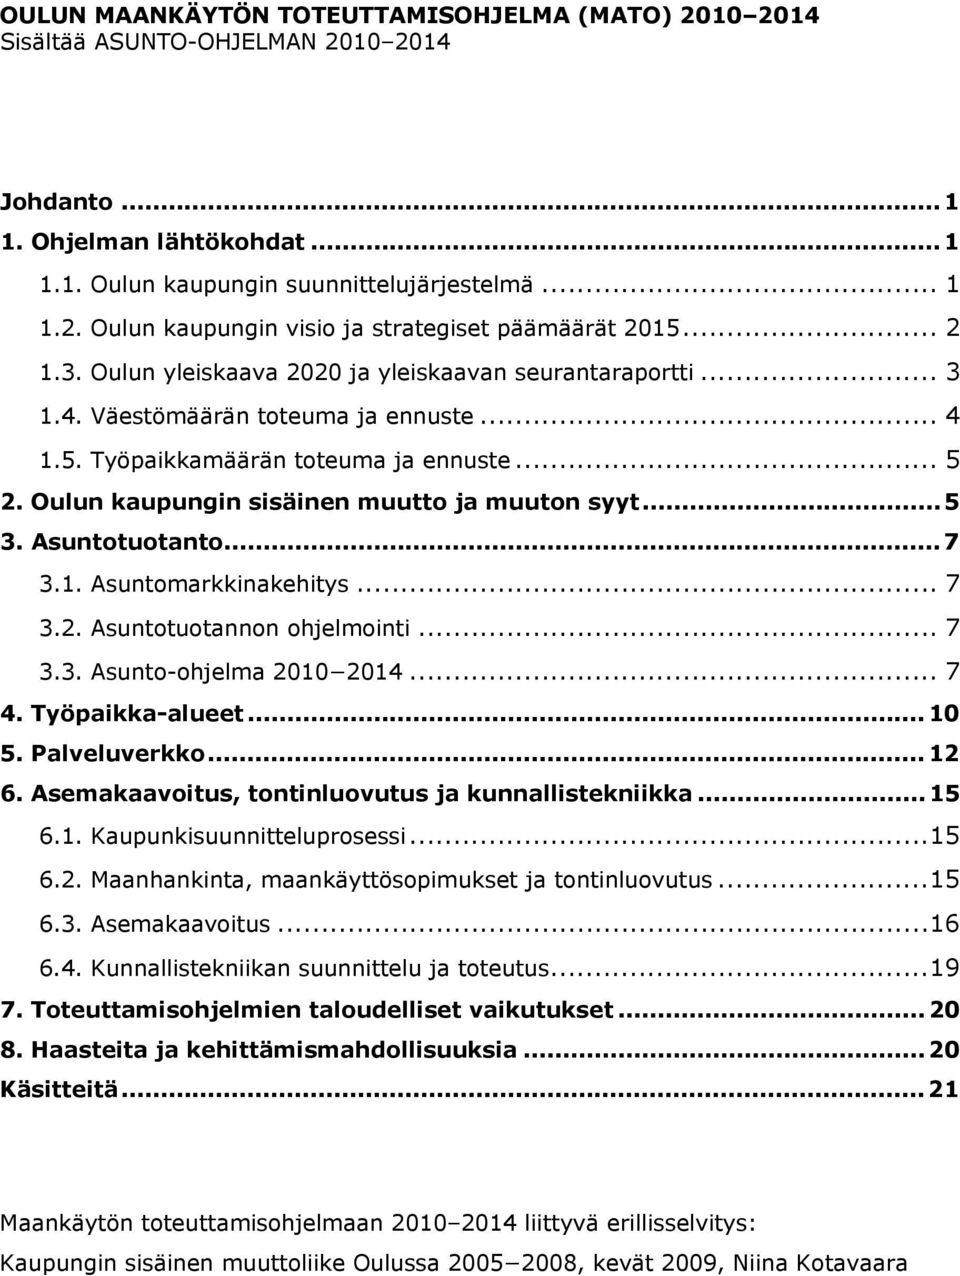 Oulun kaupungin sisäinen muutto ja muuton syyt... 5 3. Asuntotuotanto... 7 3.1. Asuntomarkkinakehitys... 7 3.2. Asuntotuotannon ohjelmointi... 7 3.3. Asunto-ohjelma 2010 2014... 7 4. Työpaikka-alueet.